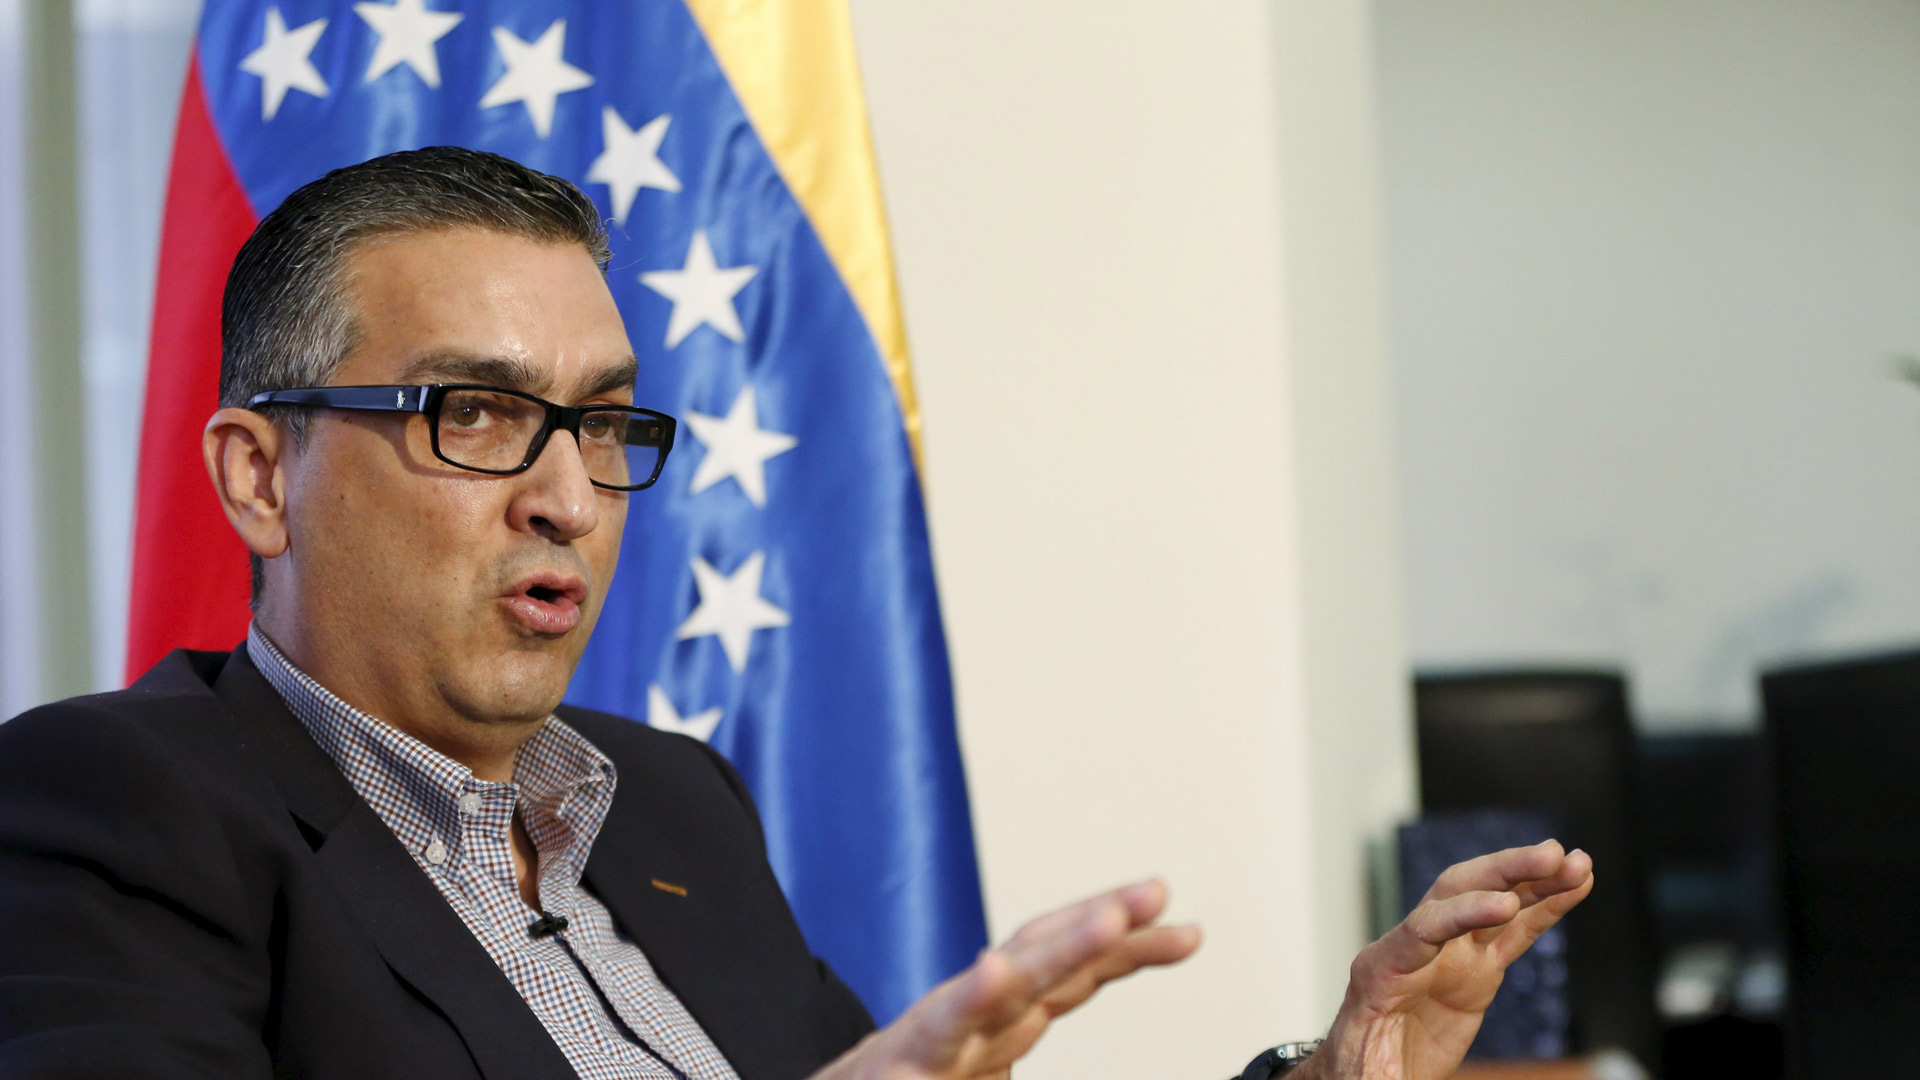 El vicepresidente del Área Económica, Miguel Pérez Abad, aseguró que buscará preservar el poder adquisitivo de los ciudadanos